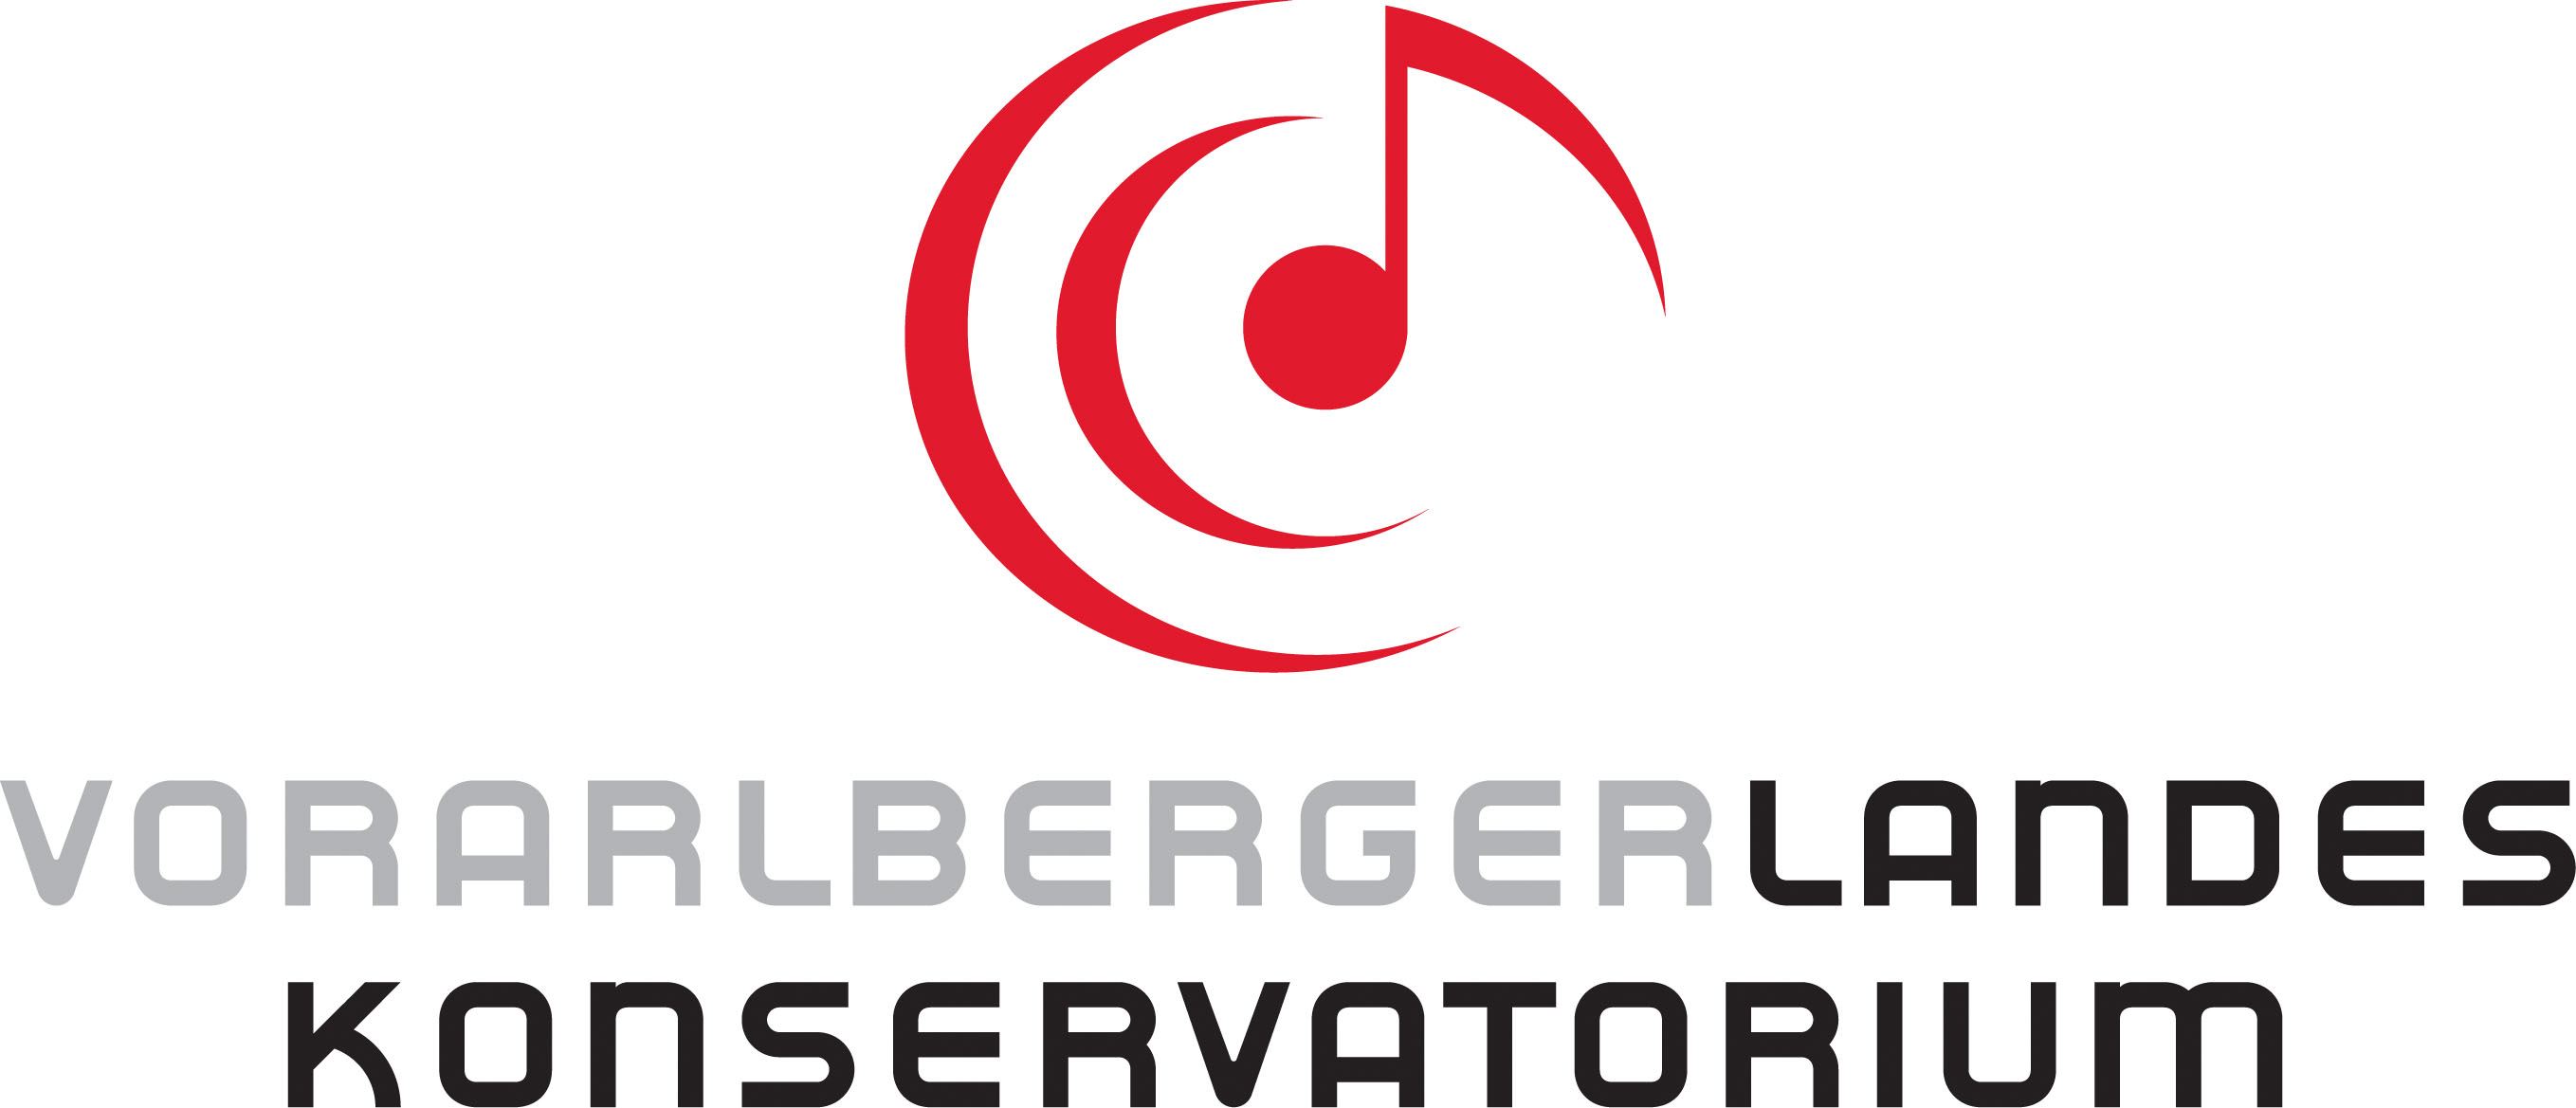 Vorarlberger Landeskonservatorium GmbH